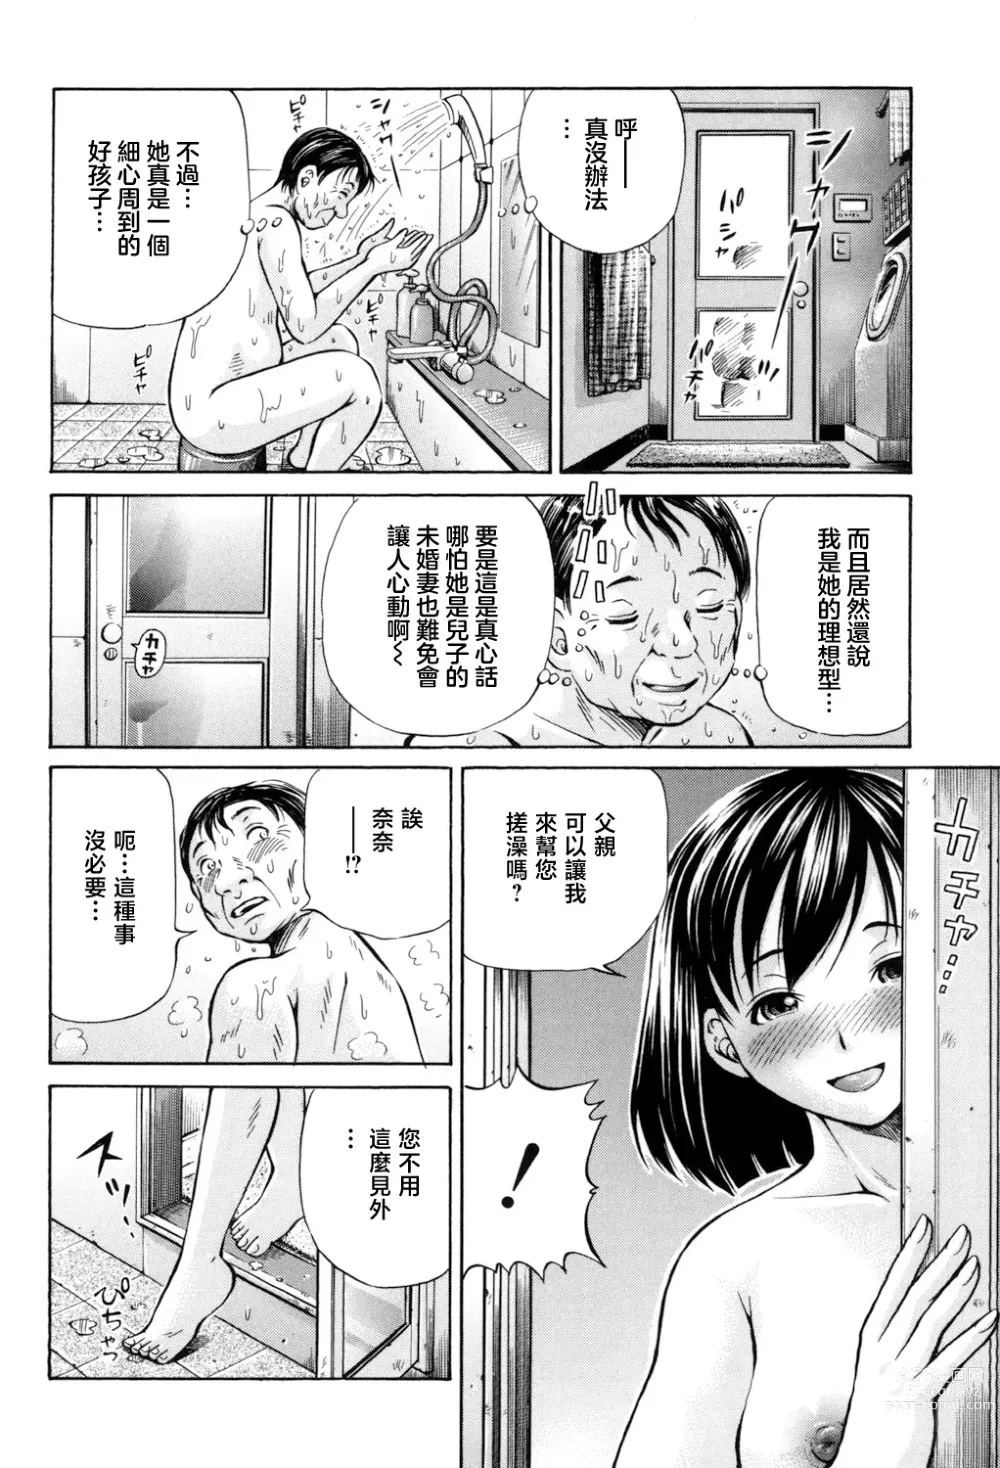 Page 6 of manga Omokage ＝ ones figure